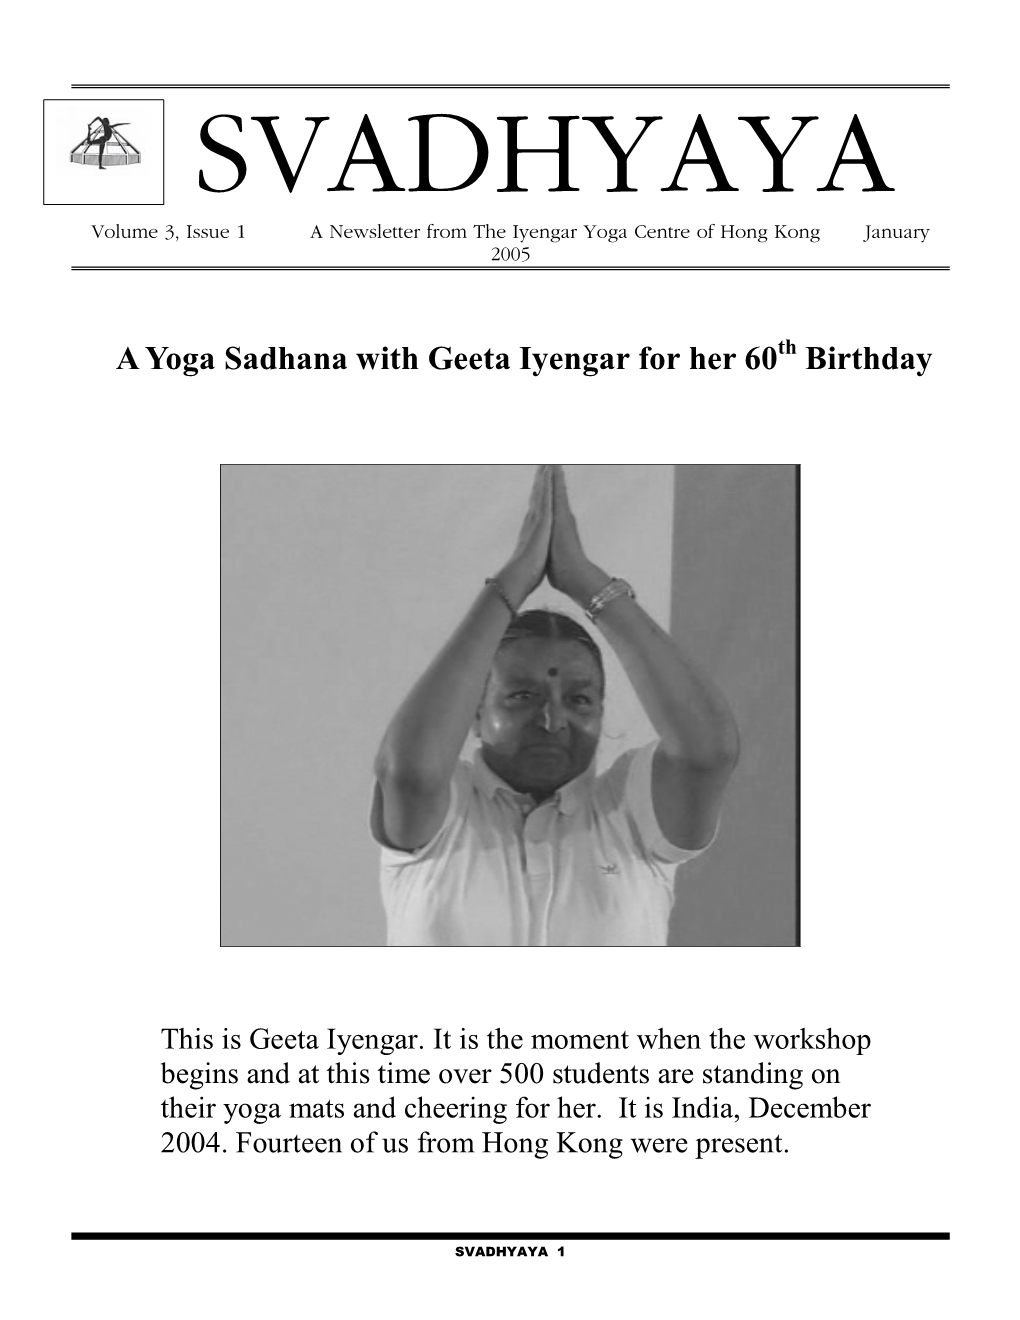 A Yoga Sadhana with Geeta Iyengar for Her 60 Birthday